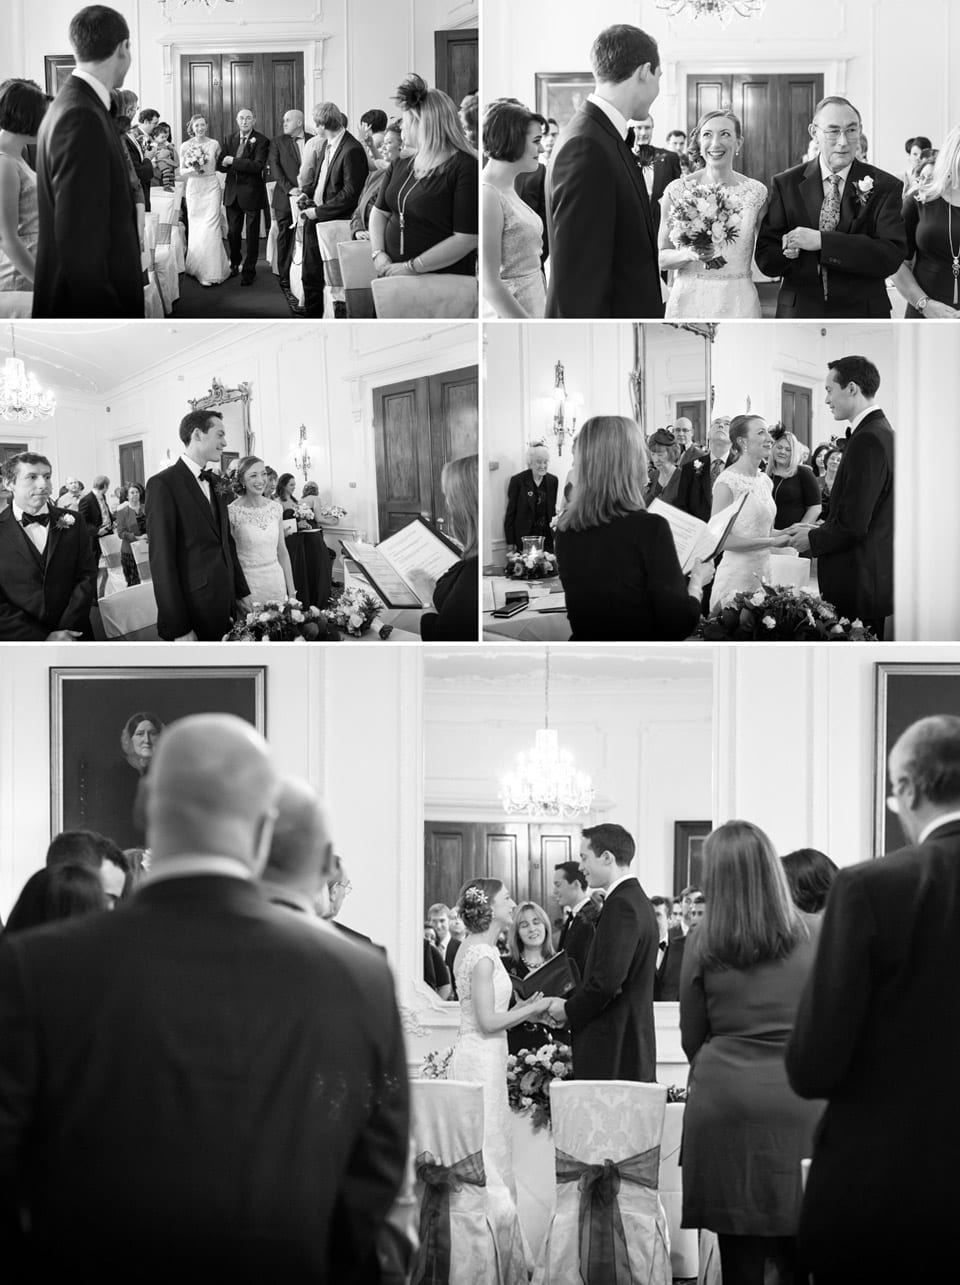 Buckinghamshire Wedding Photographer - ceremony